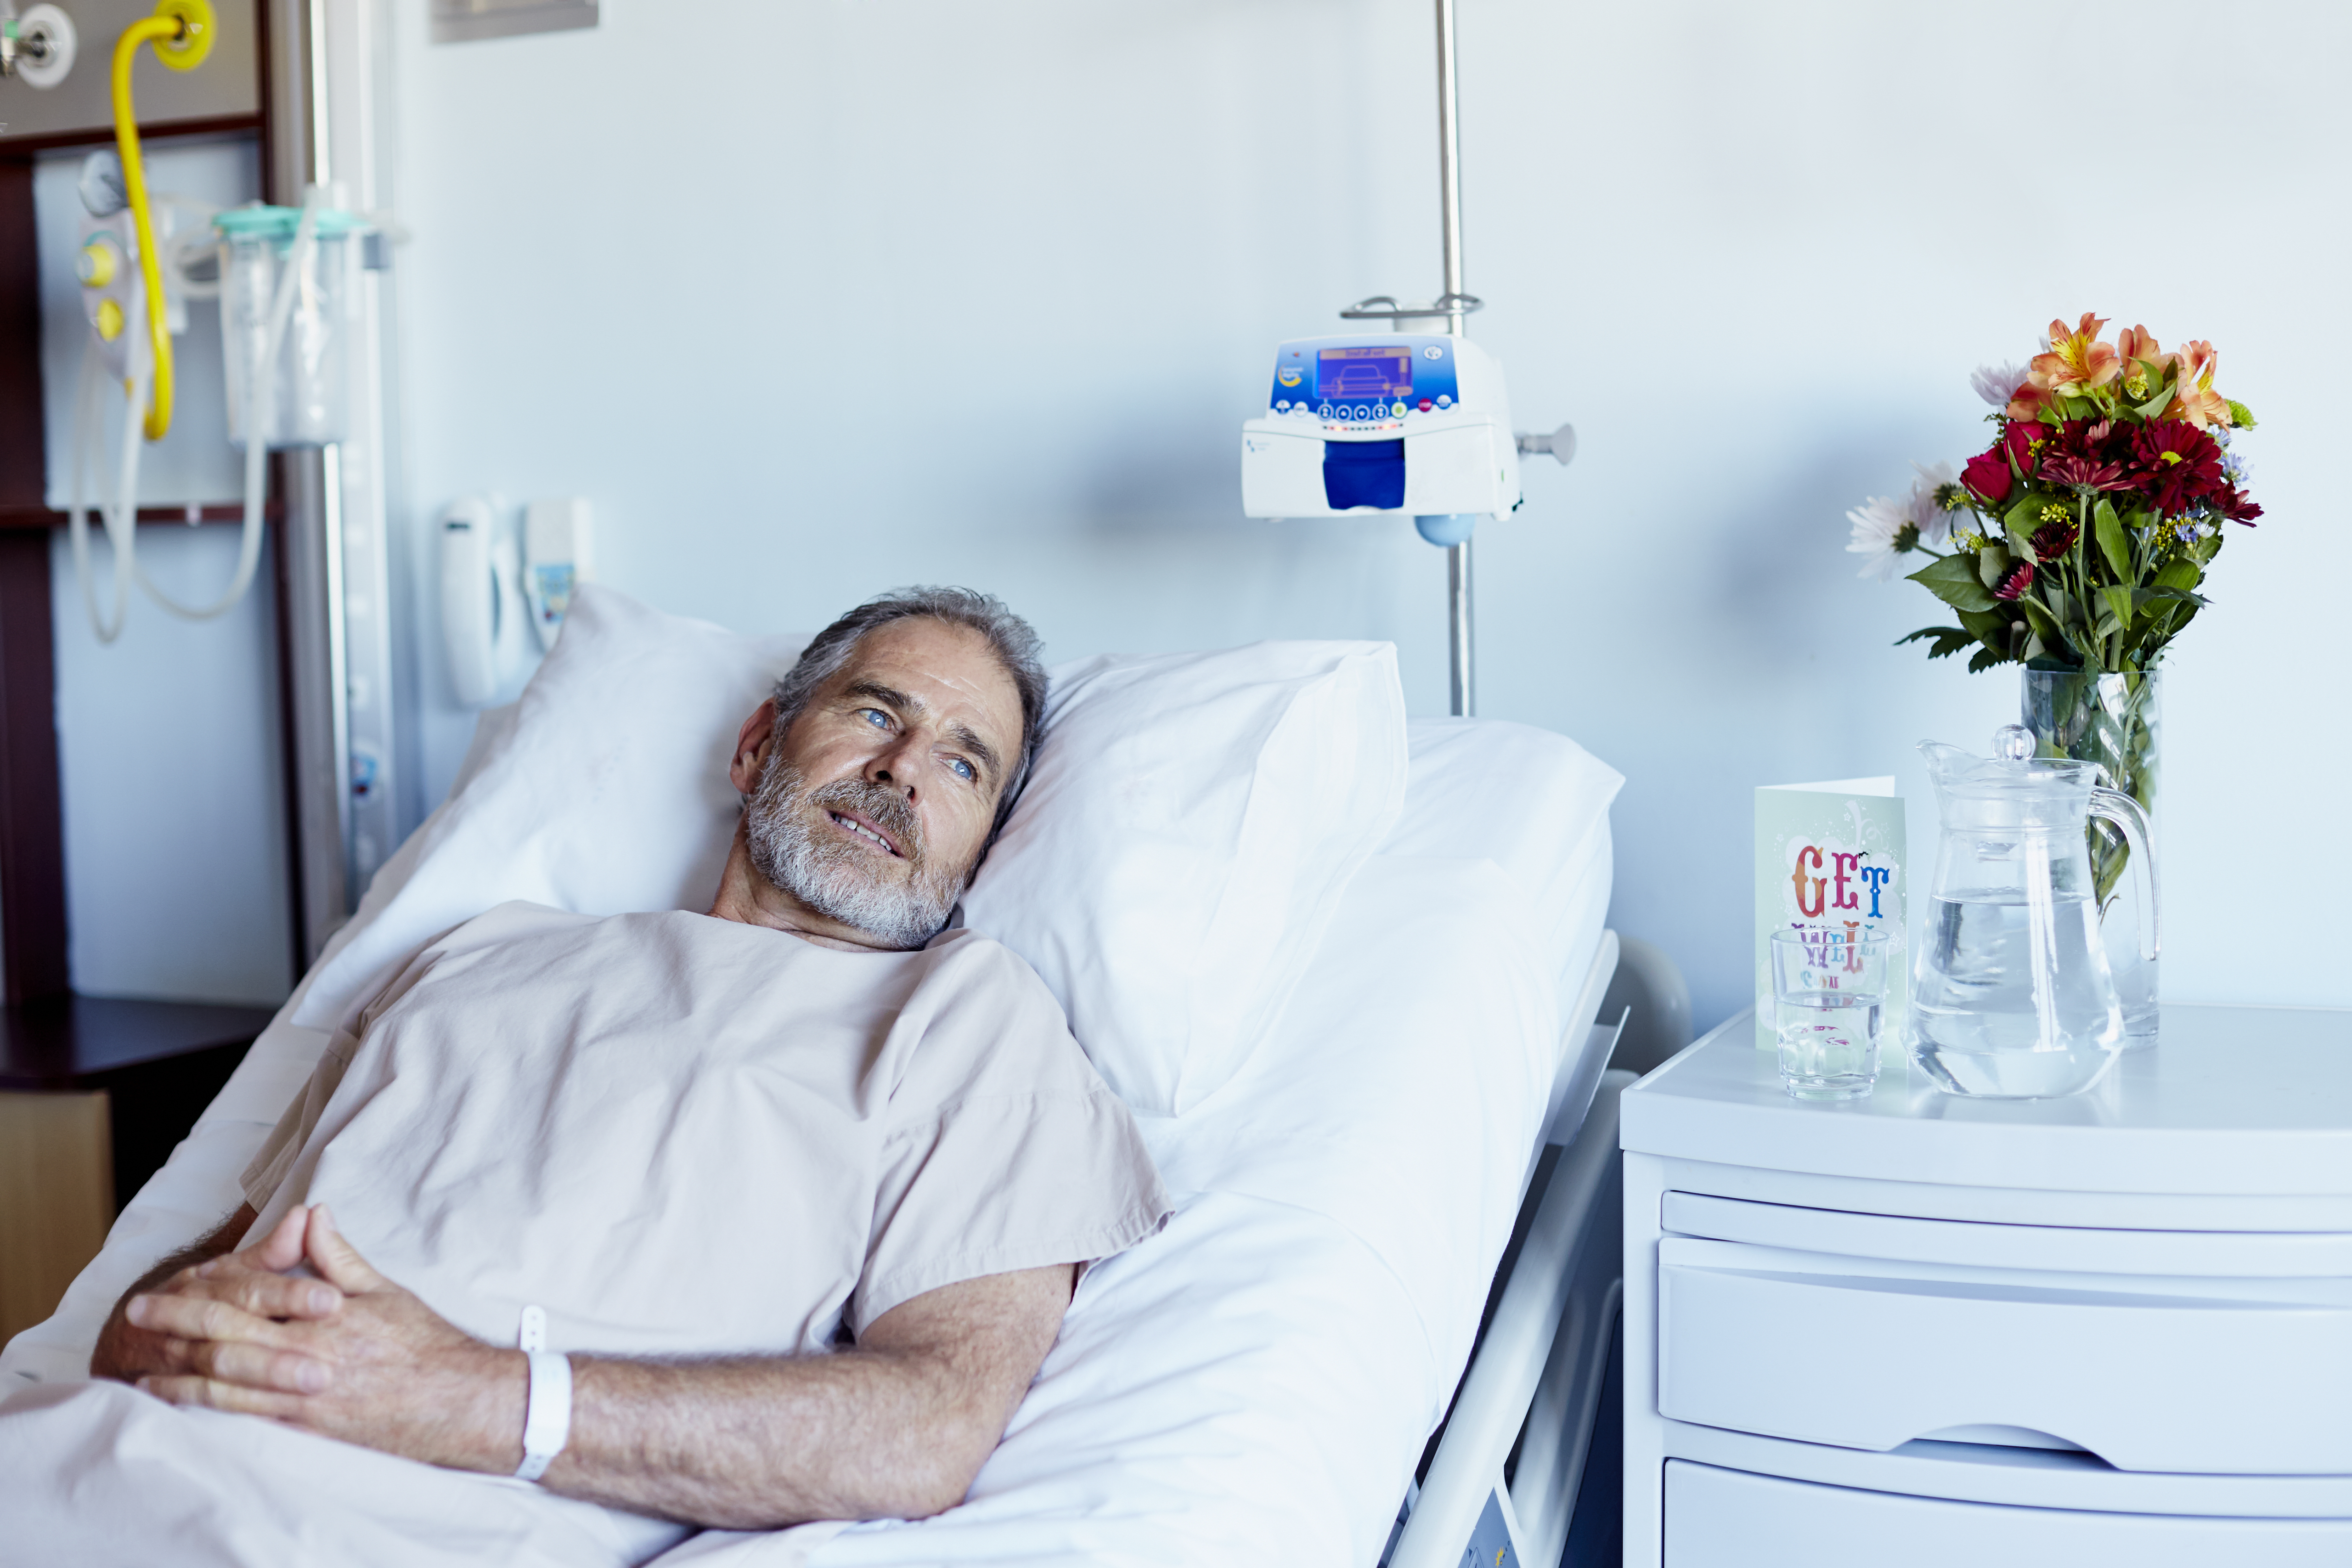 Homme réfléchi se relaxant dans une salle d'hôpital | Source : Getty Images